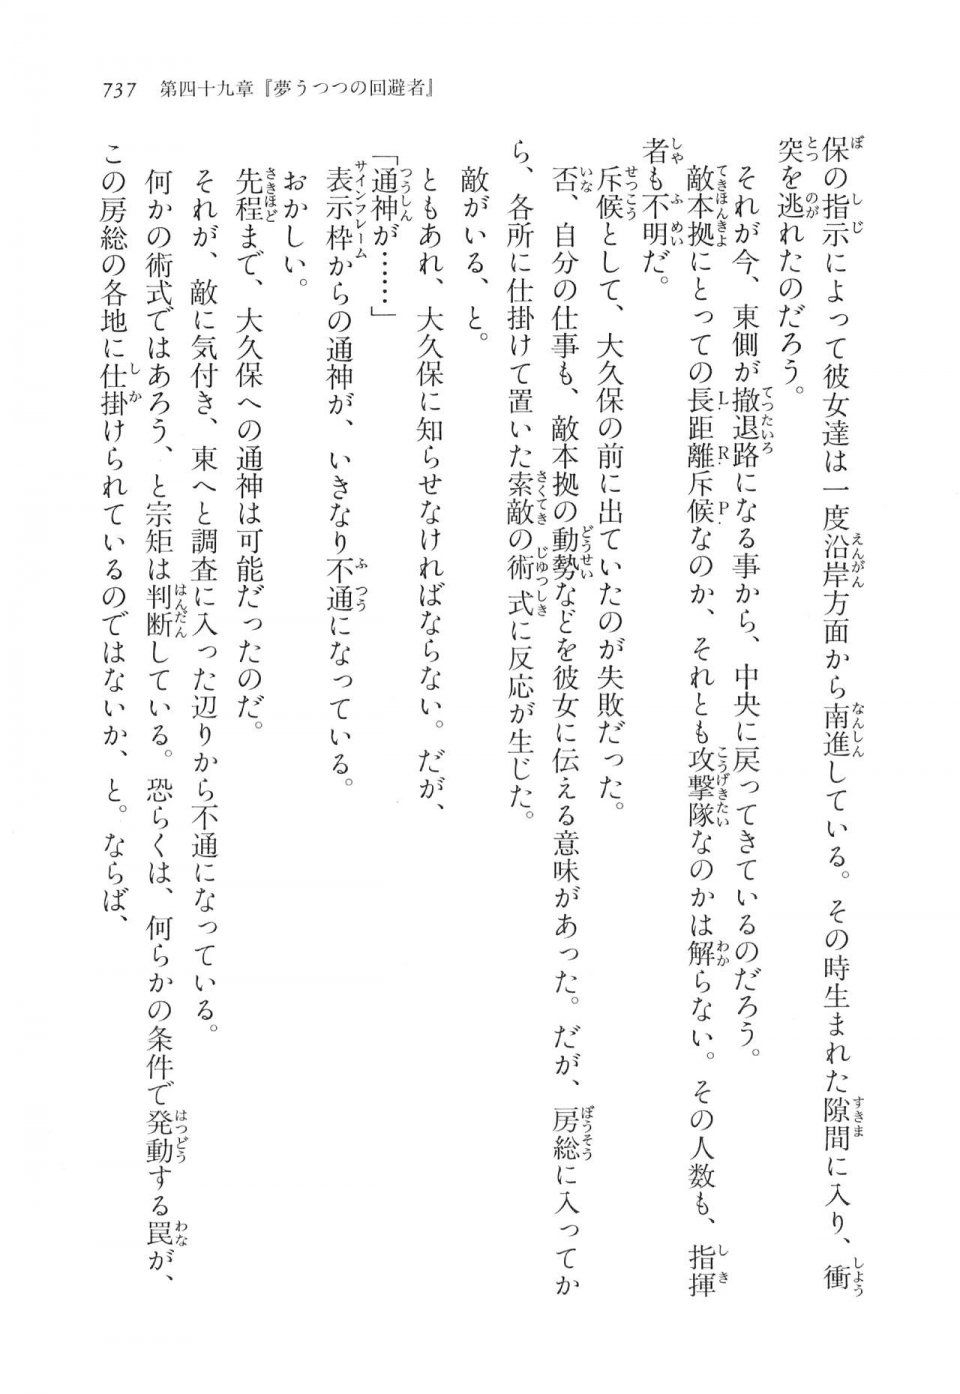 Kyoukai Senjou no Horizon LN Vol 17(7B) - Photo #739